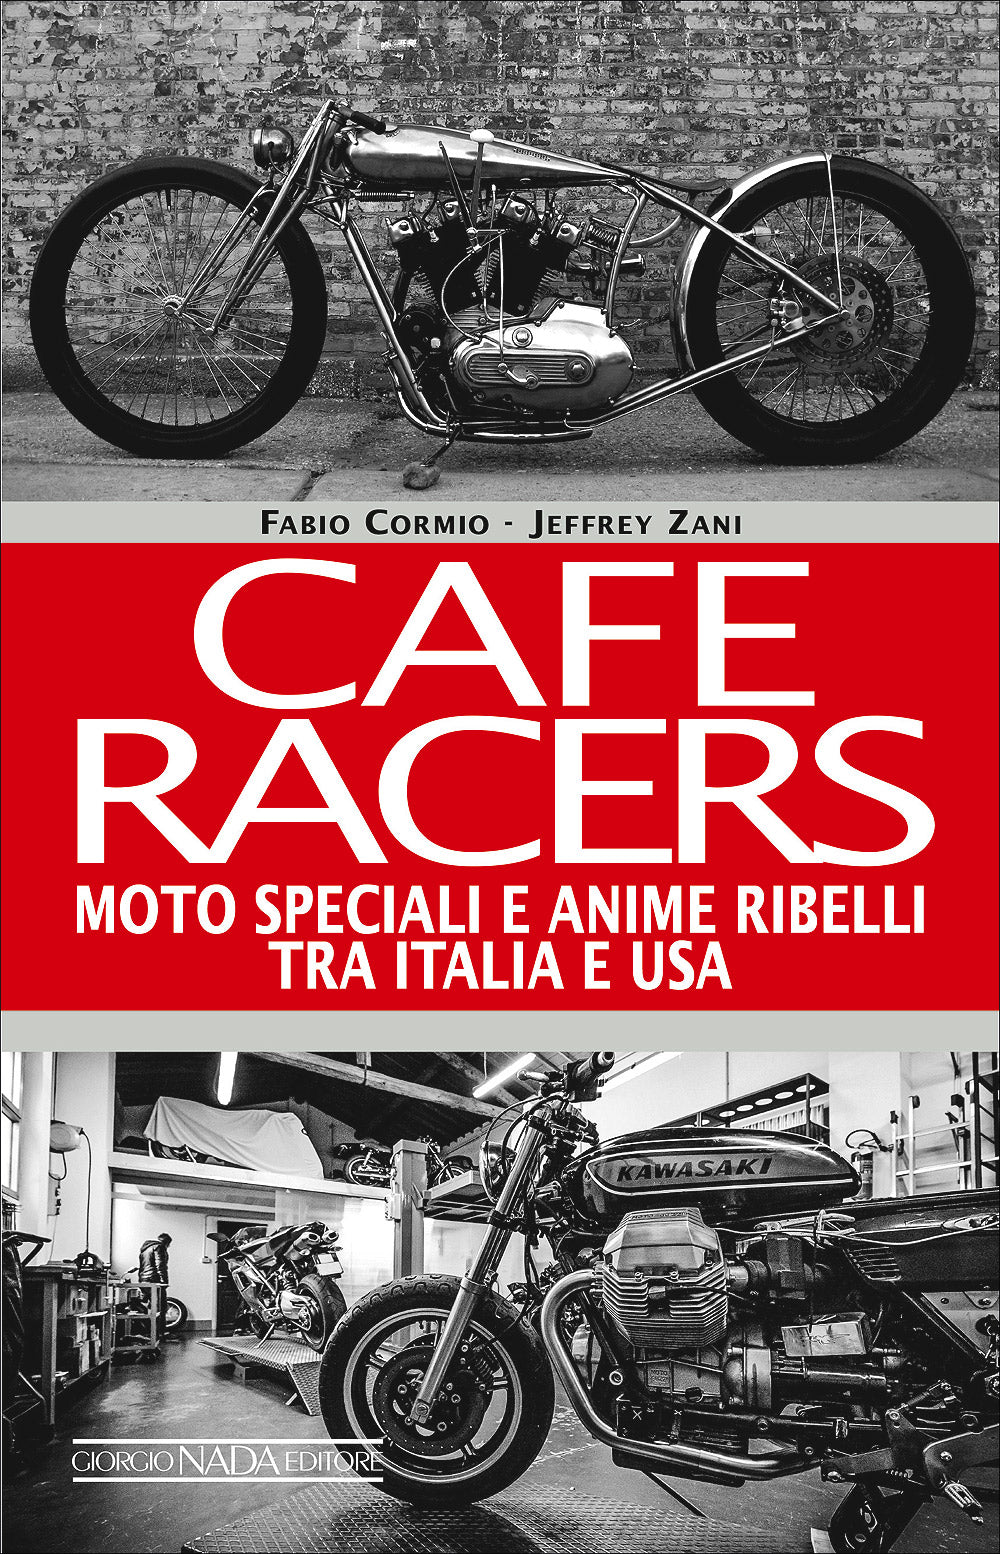 Cafe Racers::Moto speciali e anime ribelli tra Italia e U.S.A.